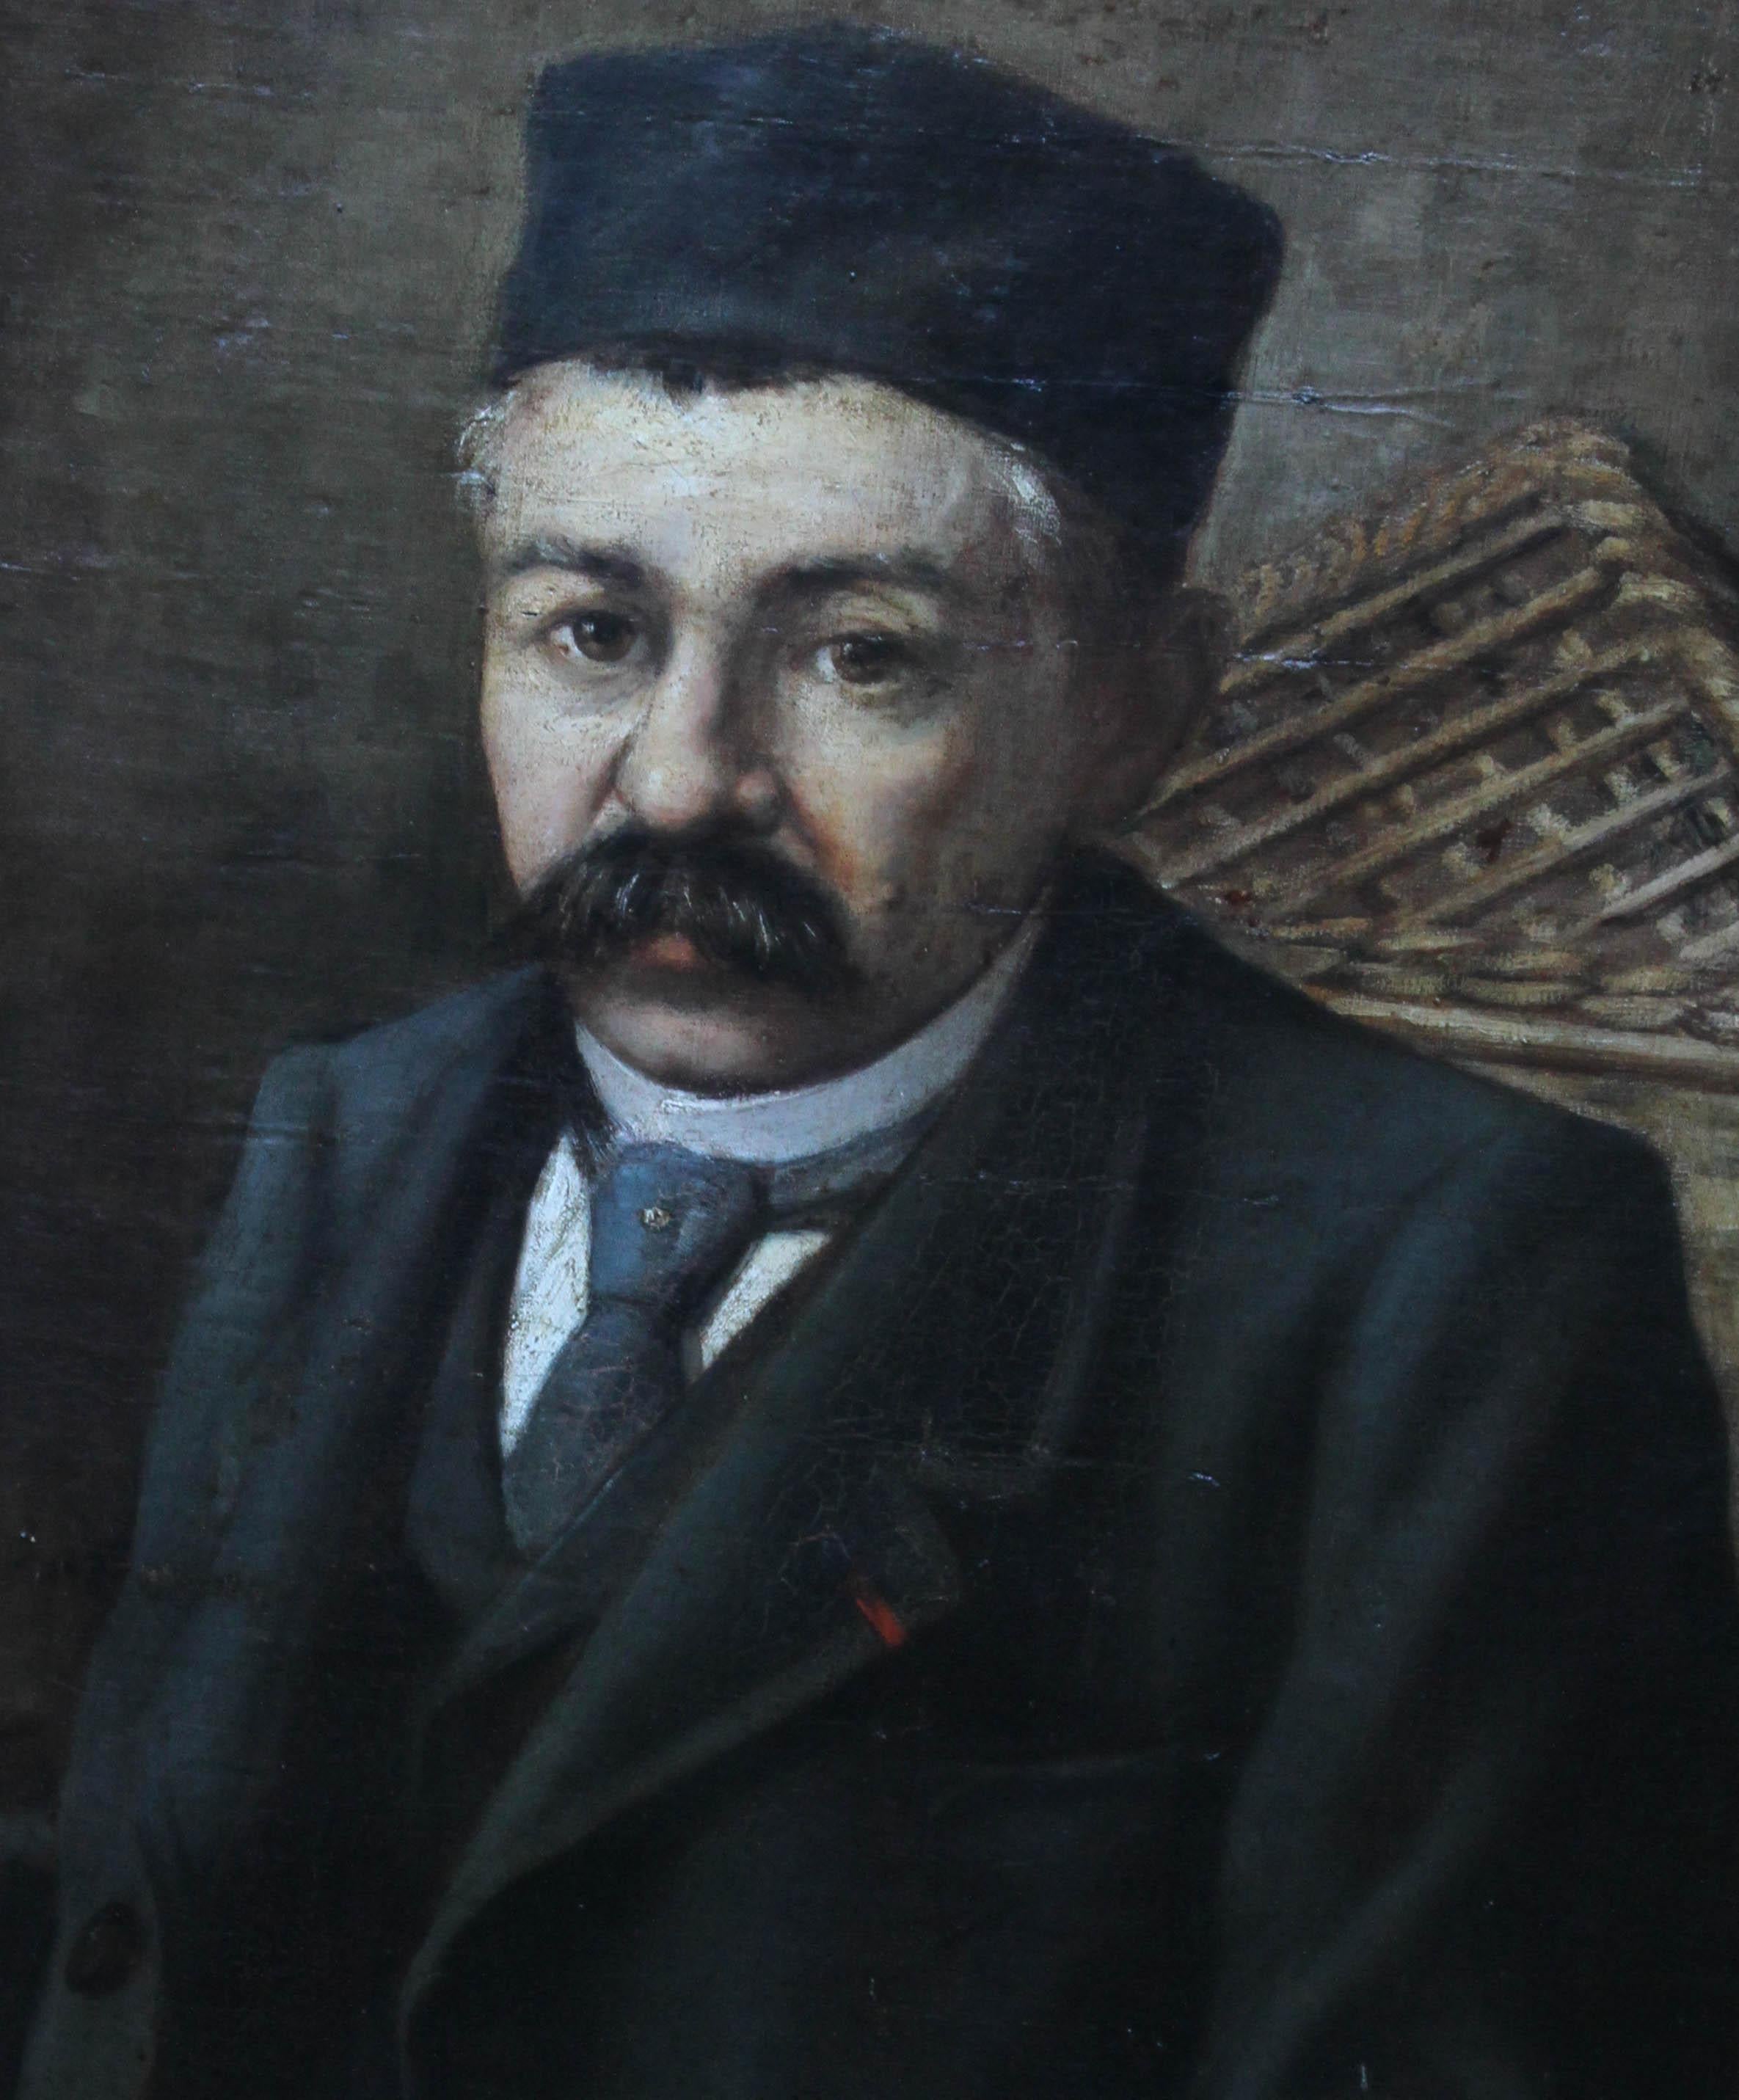 Ce grand portrait à l'huile orientaliste est l'œuvre d'un talentueux artiste de l'école turque de la fin du XIXe siècle. Le portrait est extrêmement bien peint, datant d'environ 1890. Il s'agit d'une peinture à l'huile réaliste détaillée d'un homme